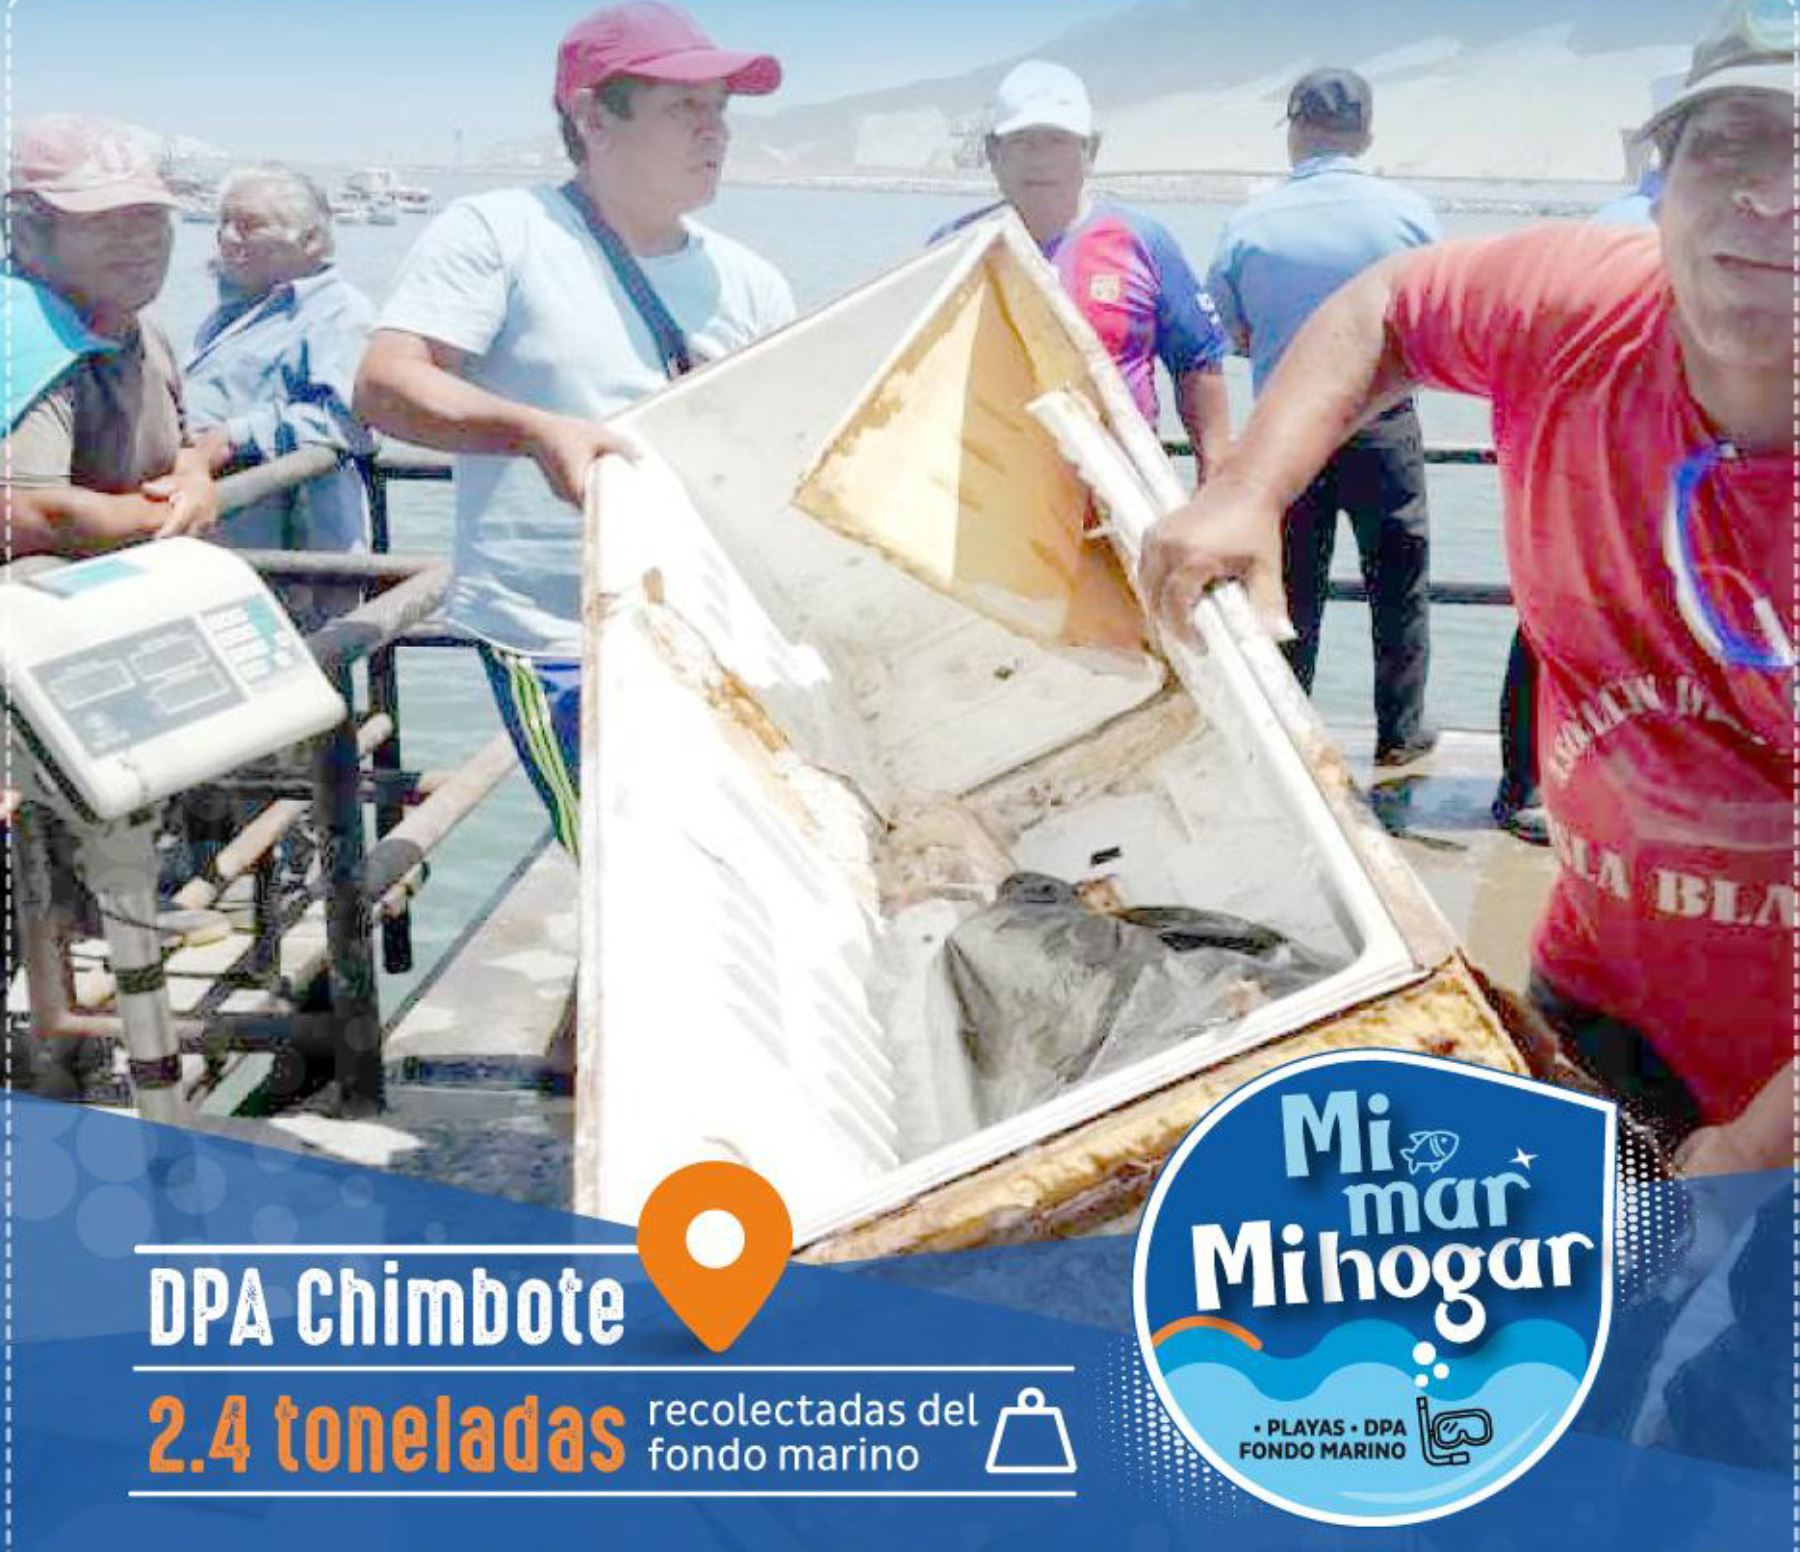 El Ministerio de la Producción (Produce) recolectó 2.4 toneladas de residuos sólidos en una jornada de limpieza de fondo marino en el Desembarcadero Pesquero Artesanal (DPA) de Chimbote, en la región Áncash.